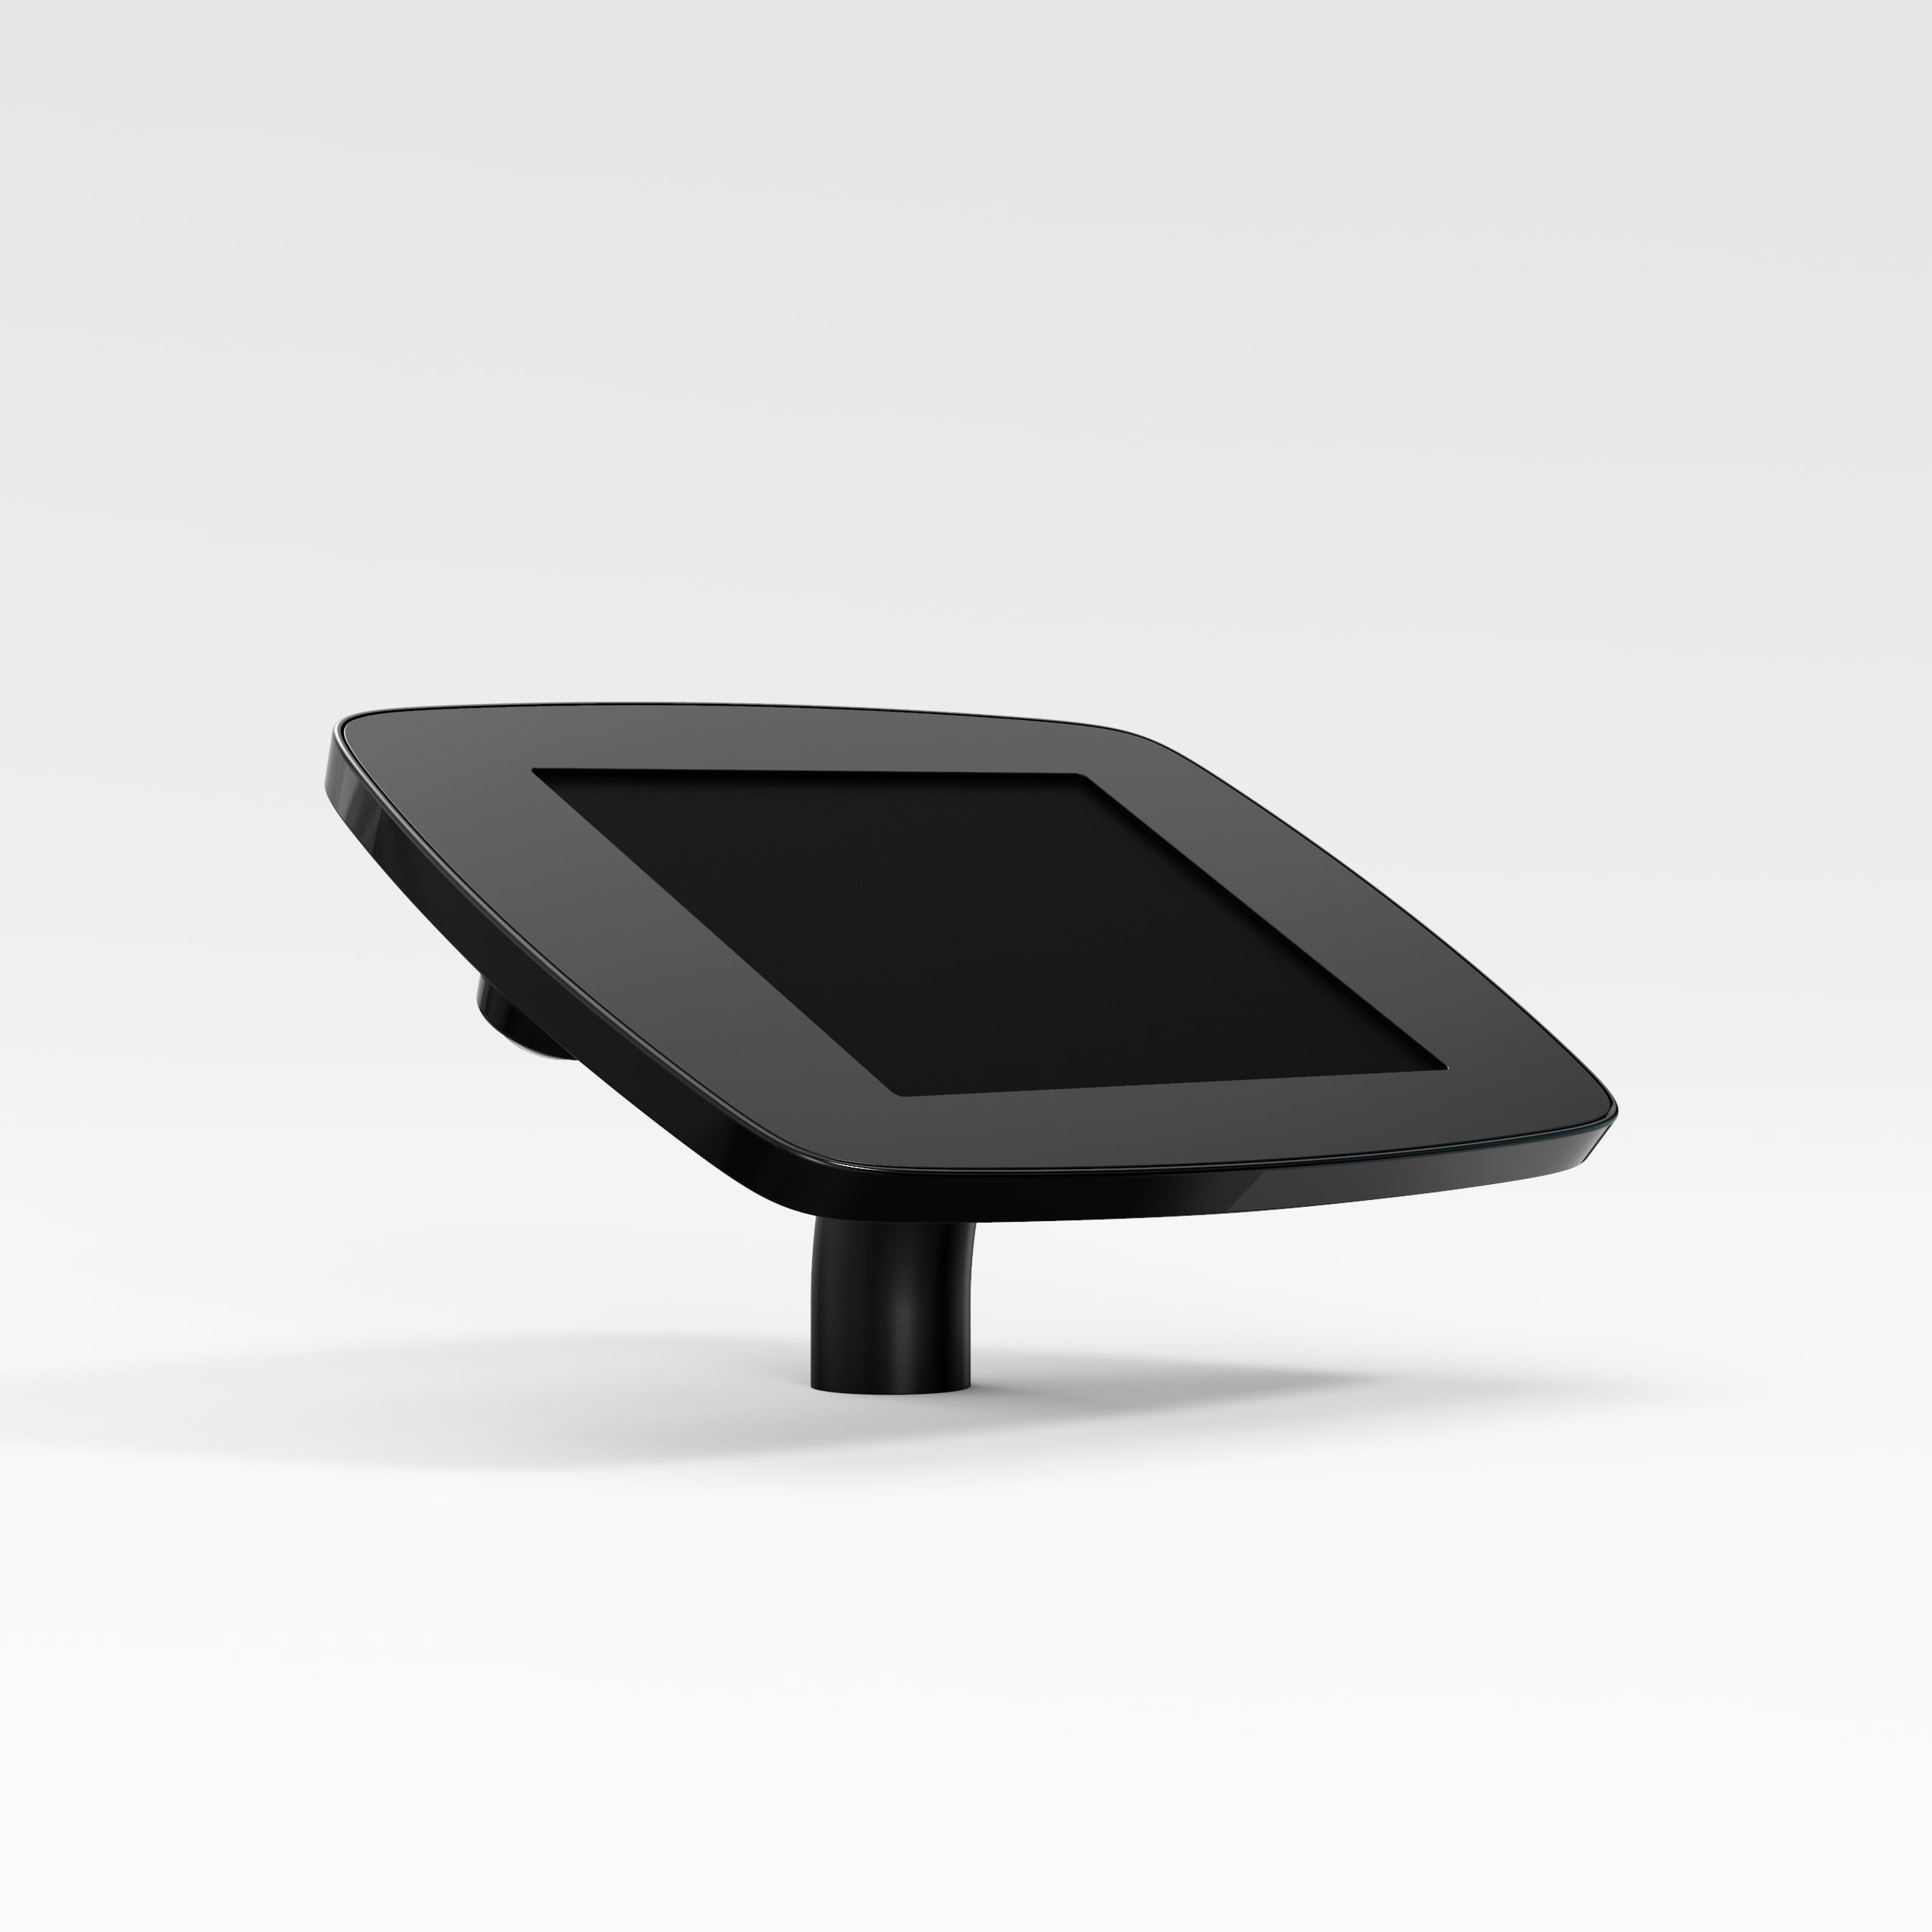 Bouncepad Desk supporto antifurto per tablet 20,1 cm [7.9] Nero (DESKBLKCLOSEDCAM/CLOSEDHOME M3)